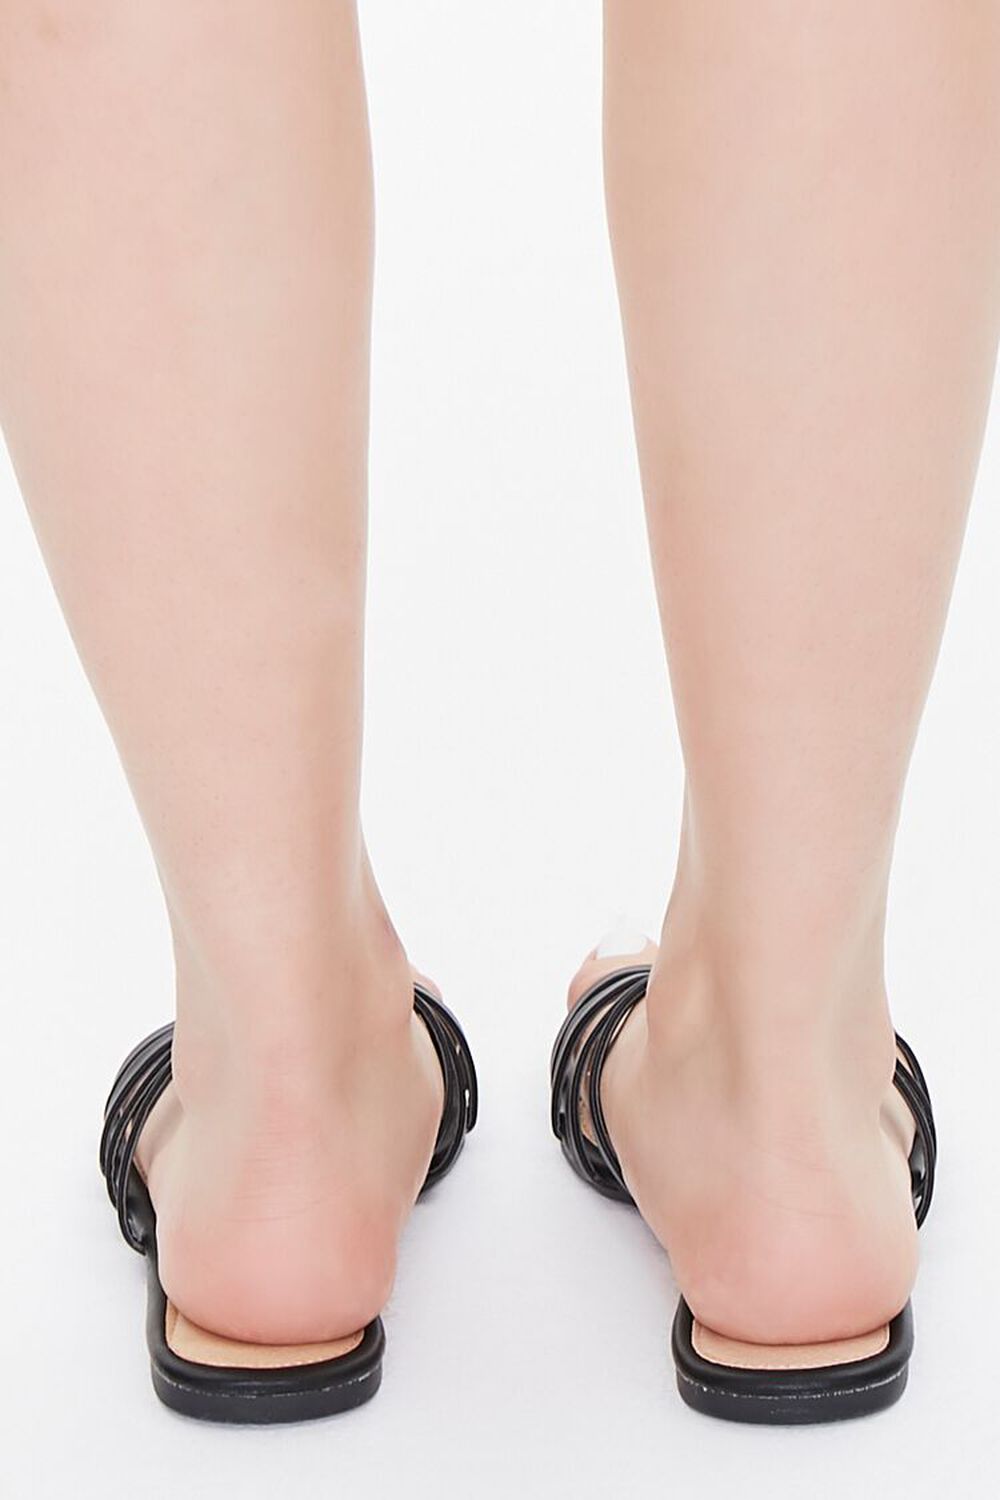 BLACK Strappy Square-Toe Sandals, image 3